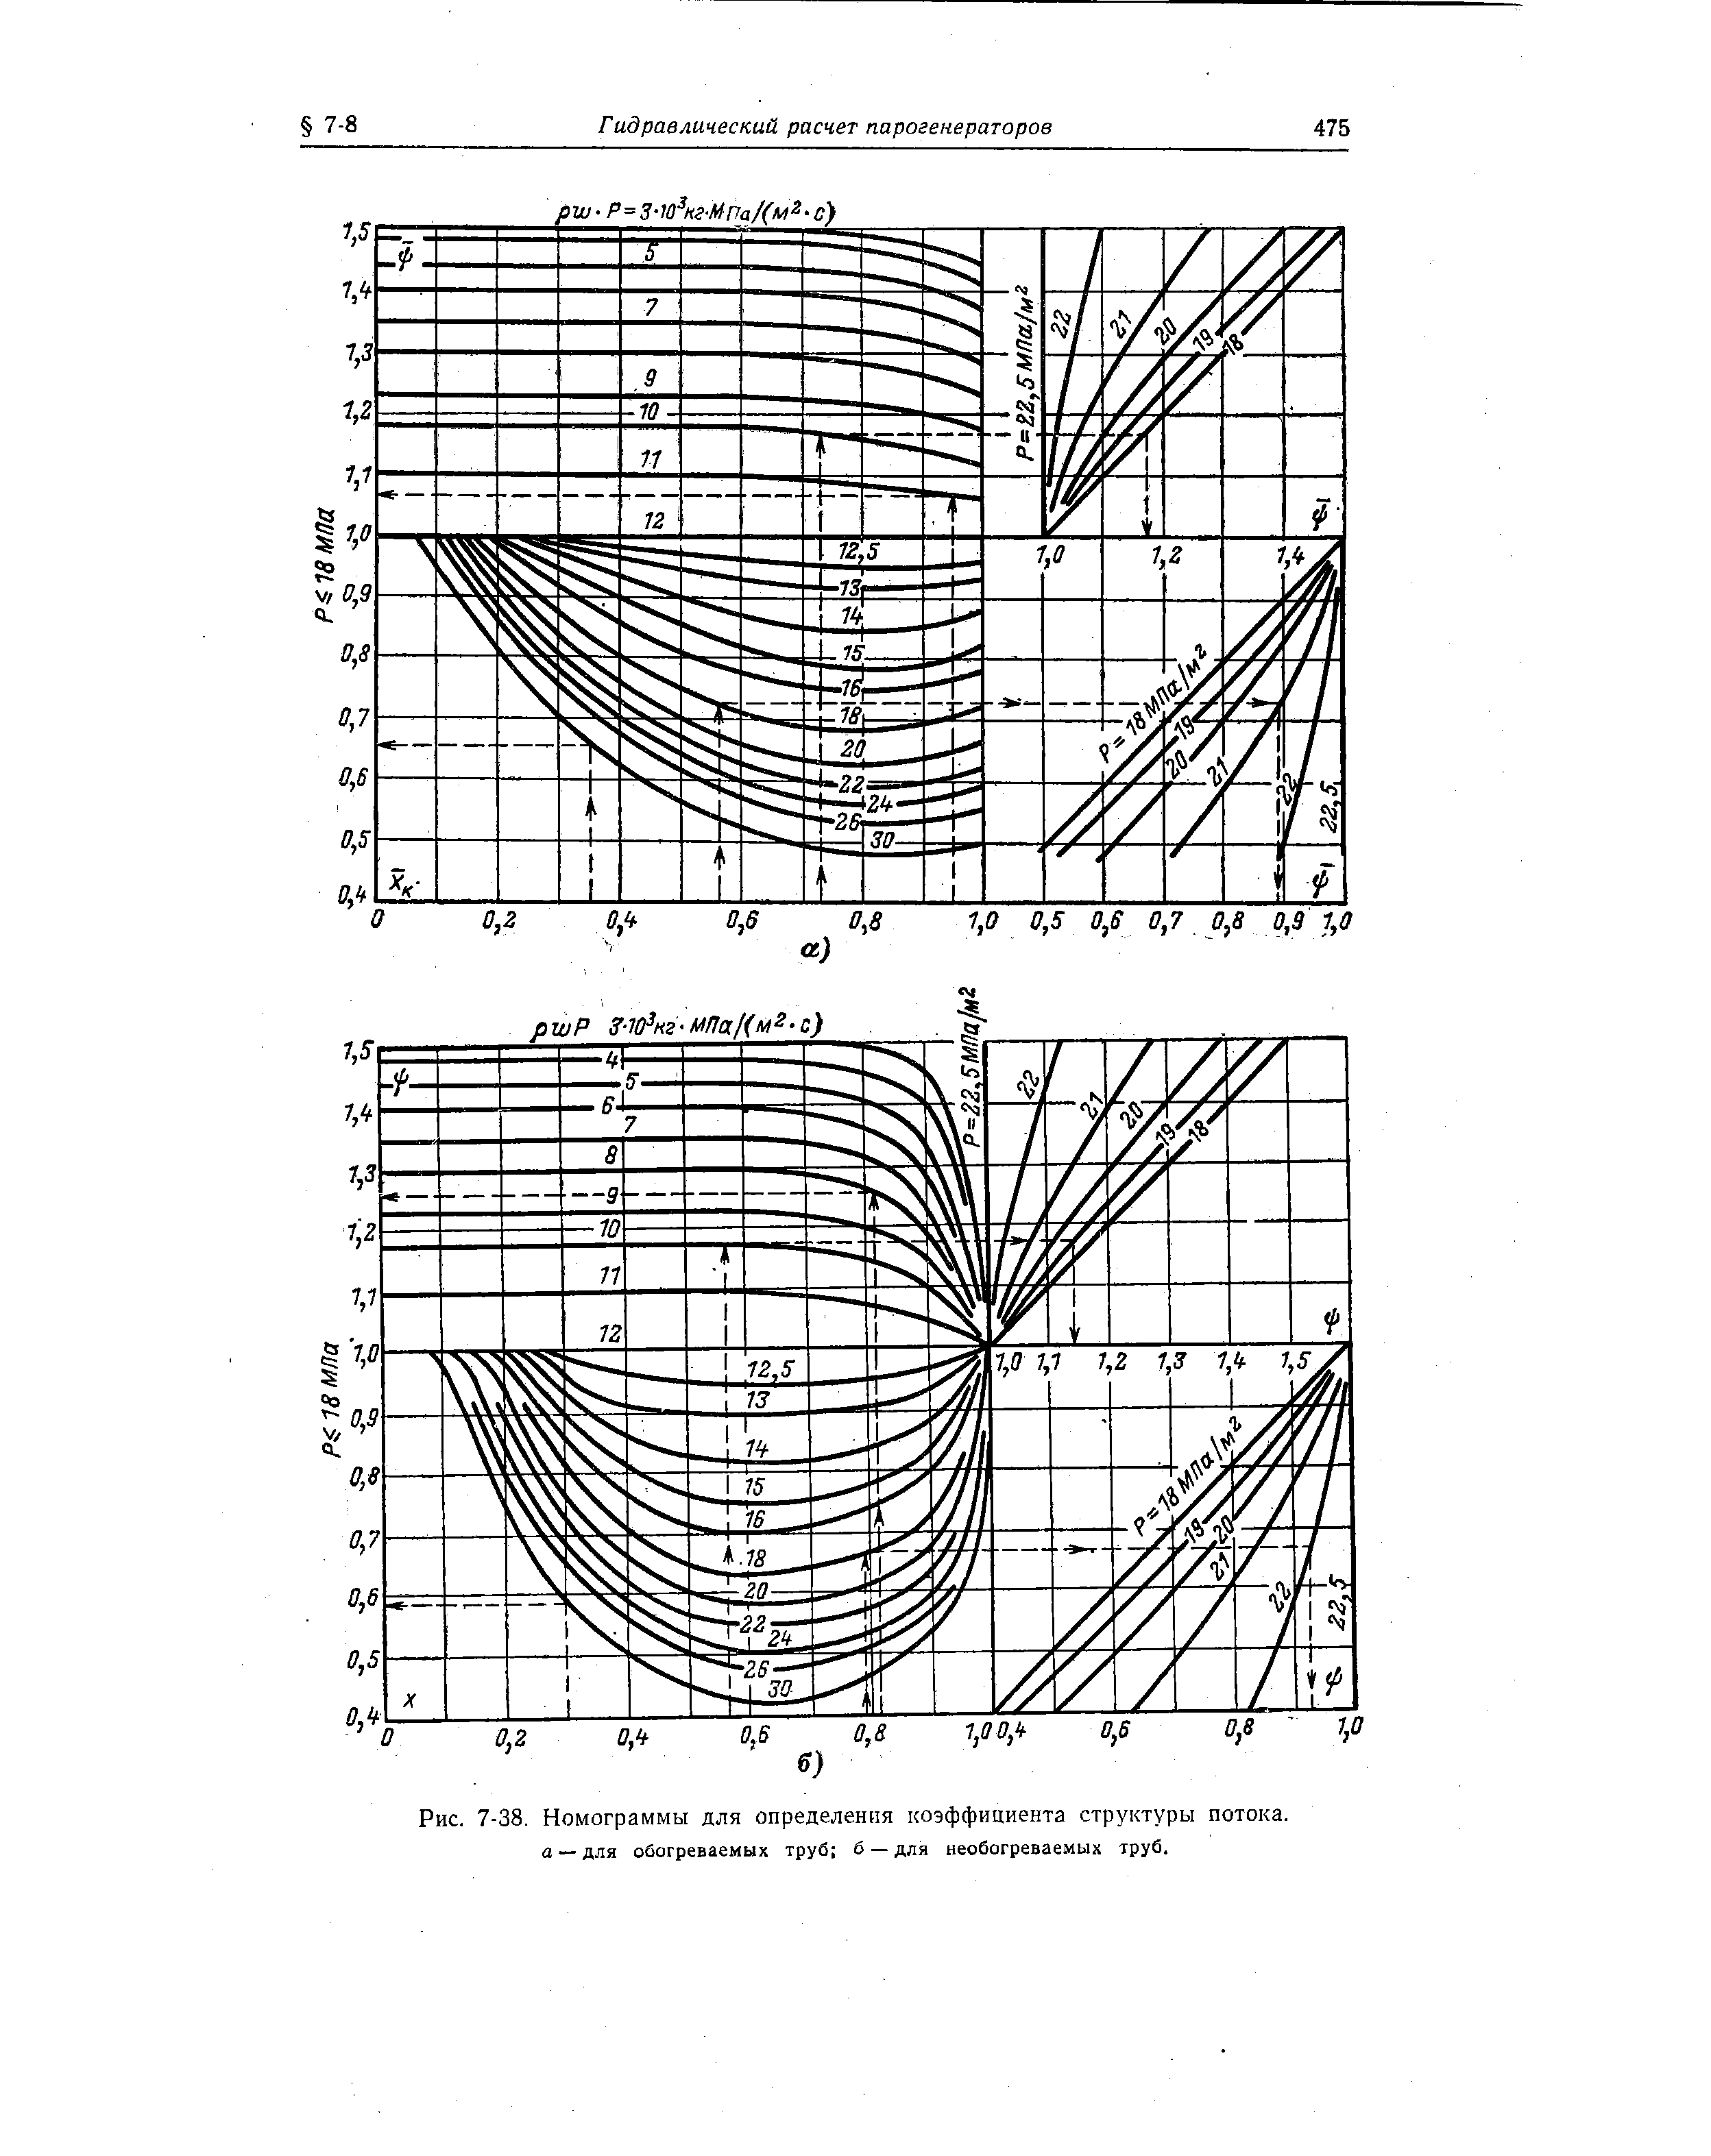 Рис. 7-38. Номограммы для определения коэффициента структуры потока. а — для обогреваемых труб б — для необогреваемых труб.
